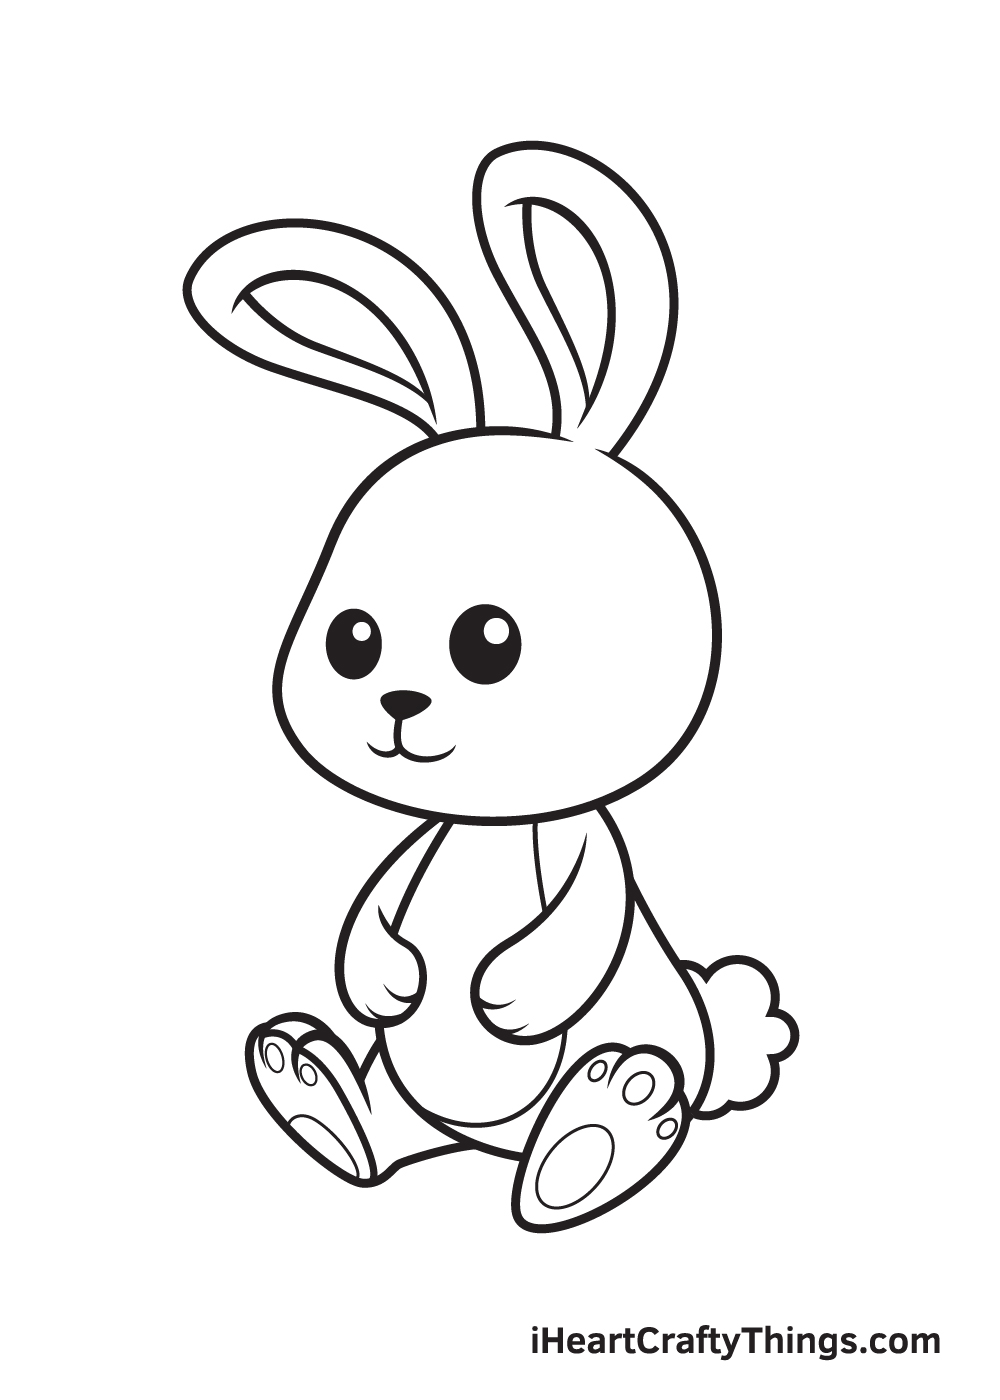 Vẽ chú thỏ - Bước 9